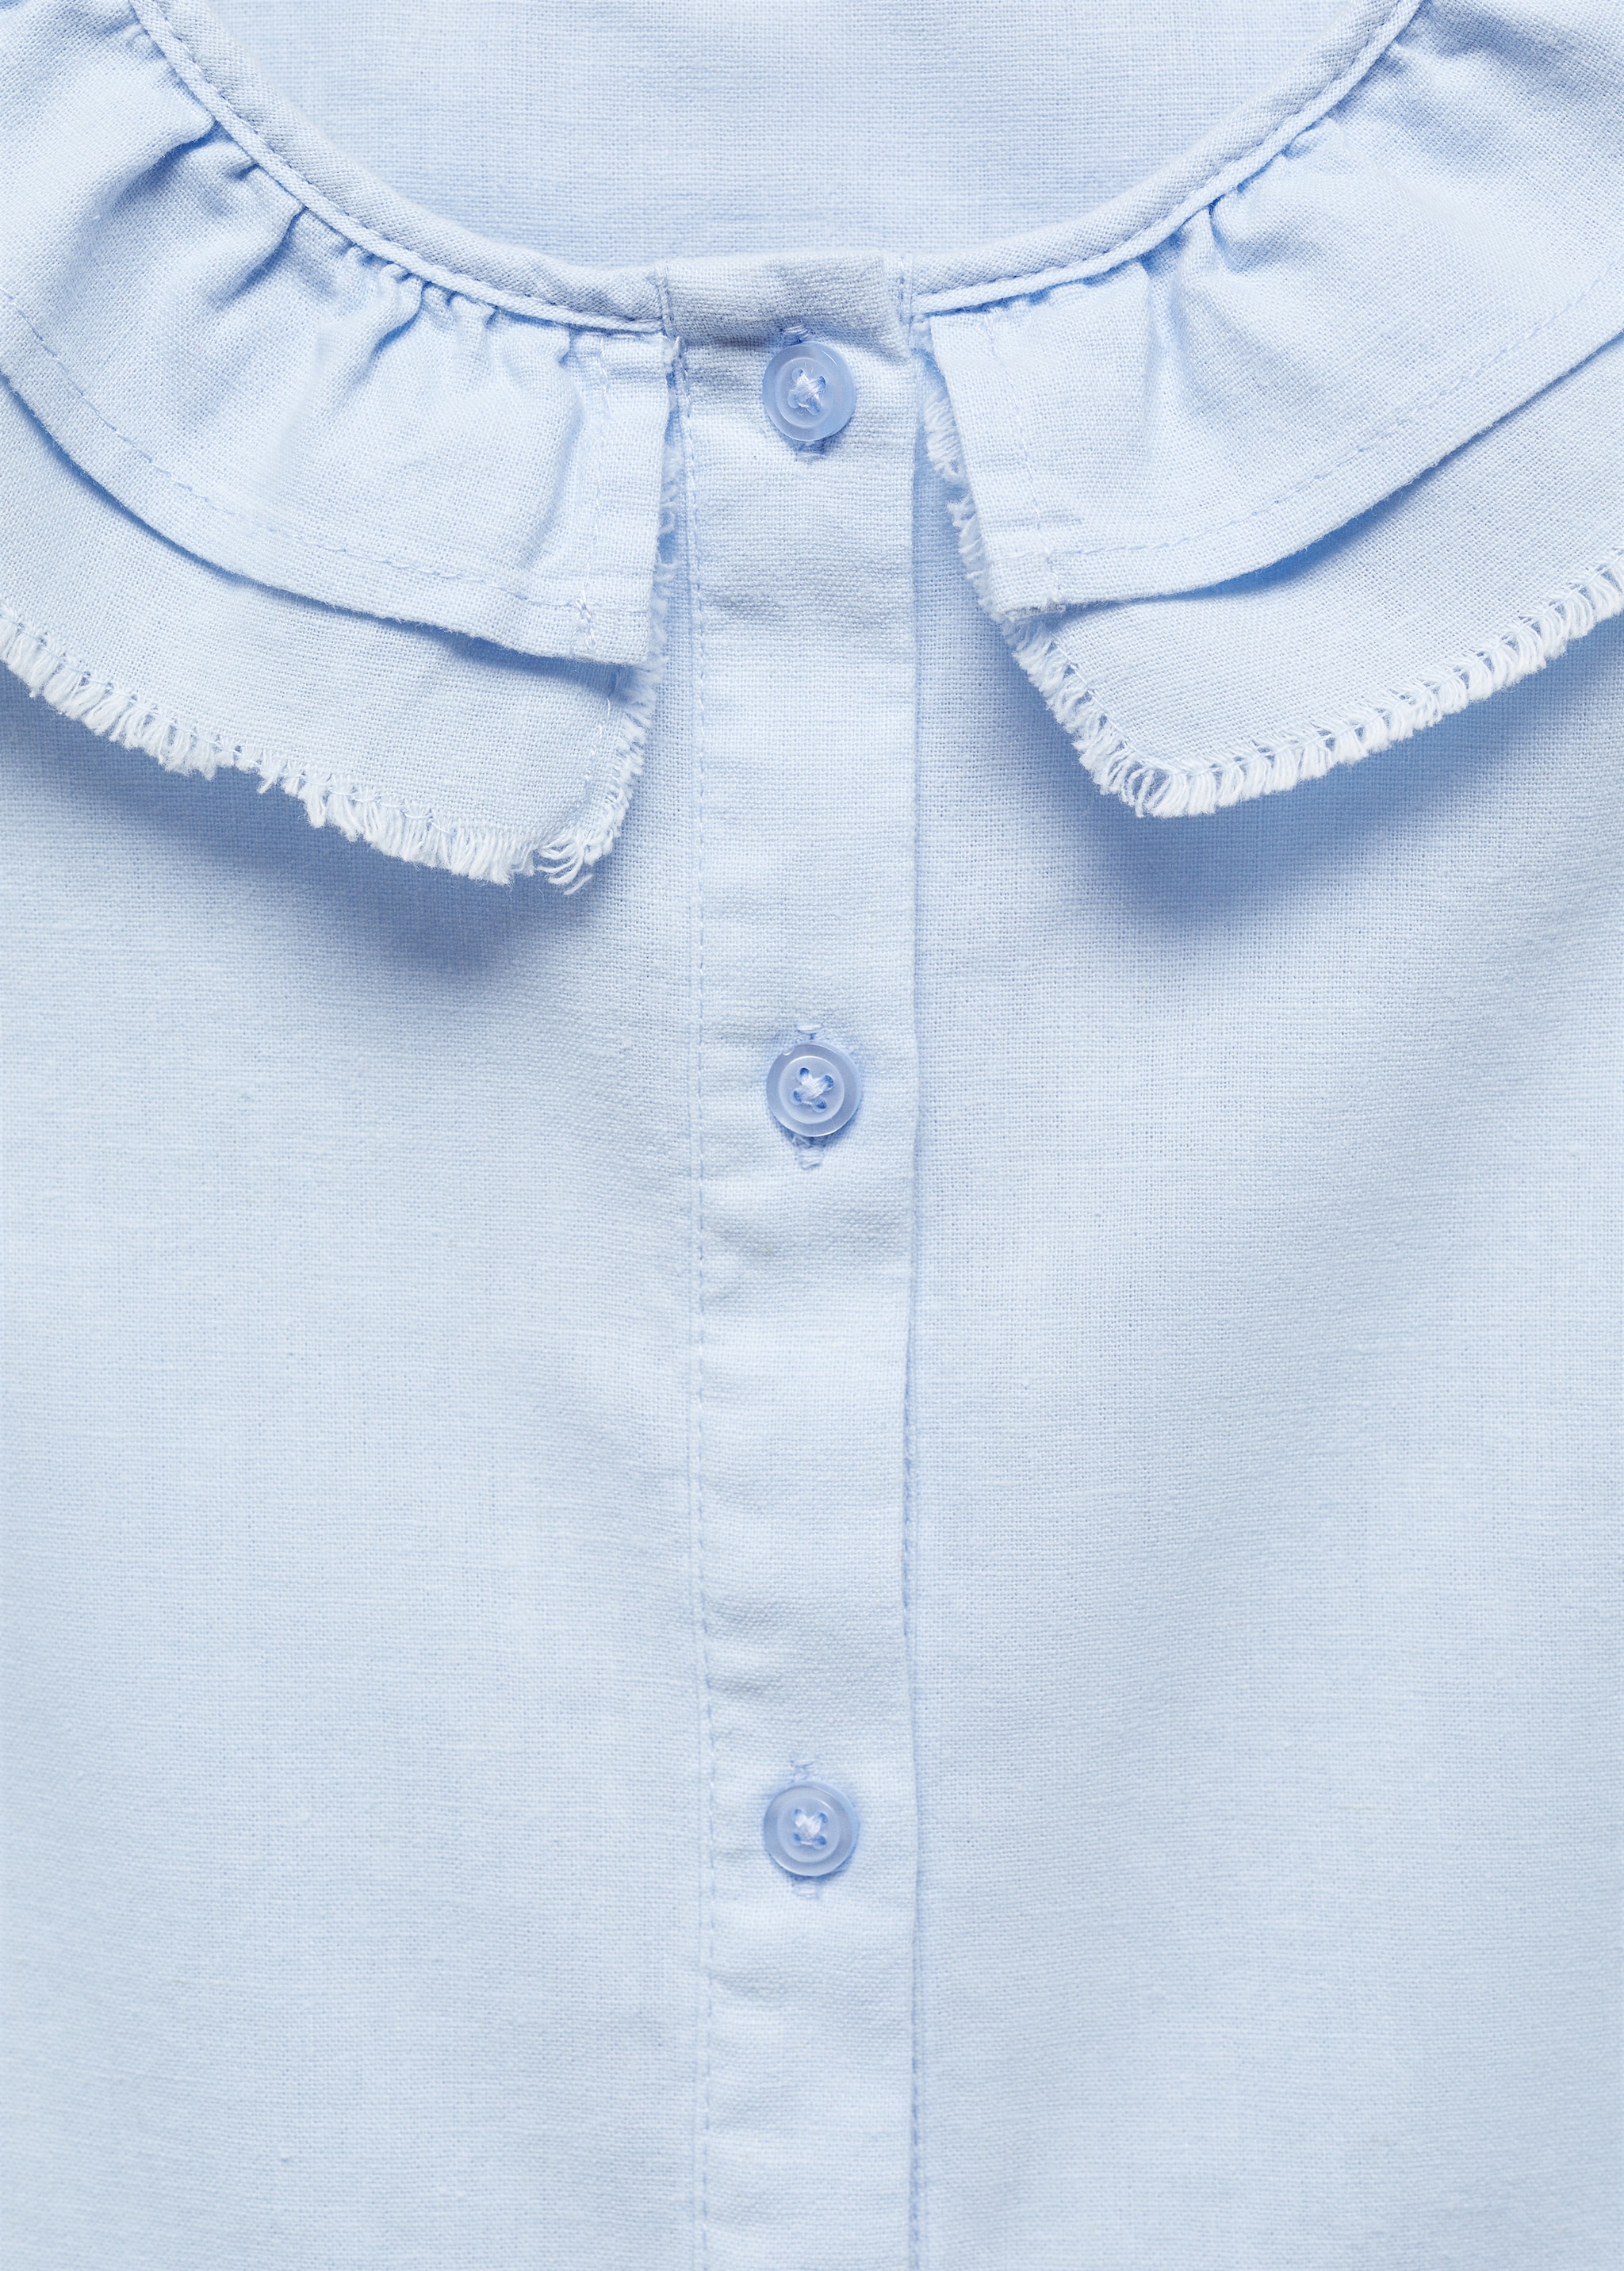 Blusa lino botones - Detalle del artículo 8